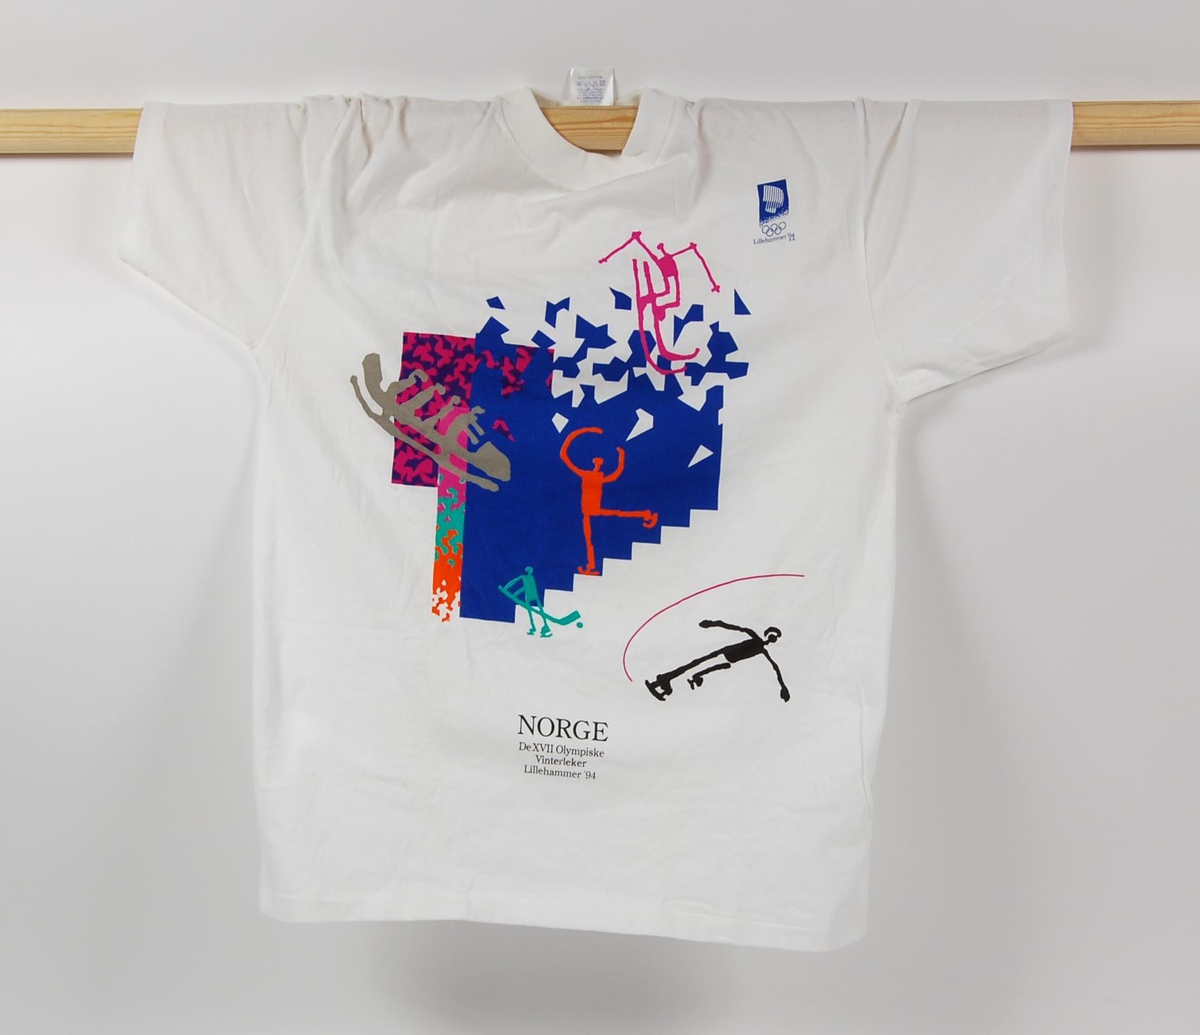 Hvit t-skjorte med flerfarget krystallmønster og piktogrammer av ulike grener i de olympiske vinterleker på Lillehammer i 1994. Krystallmønsteret inngikk i LOOCs designprogram. Det er også en logo for de olympiske vinterleker på Lillehammer i 1994. T-skjorten er i størrelse S.